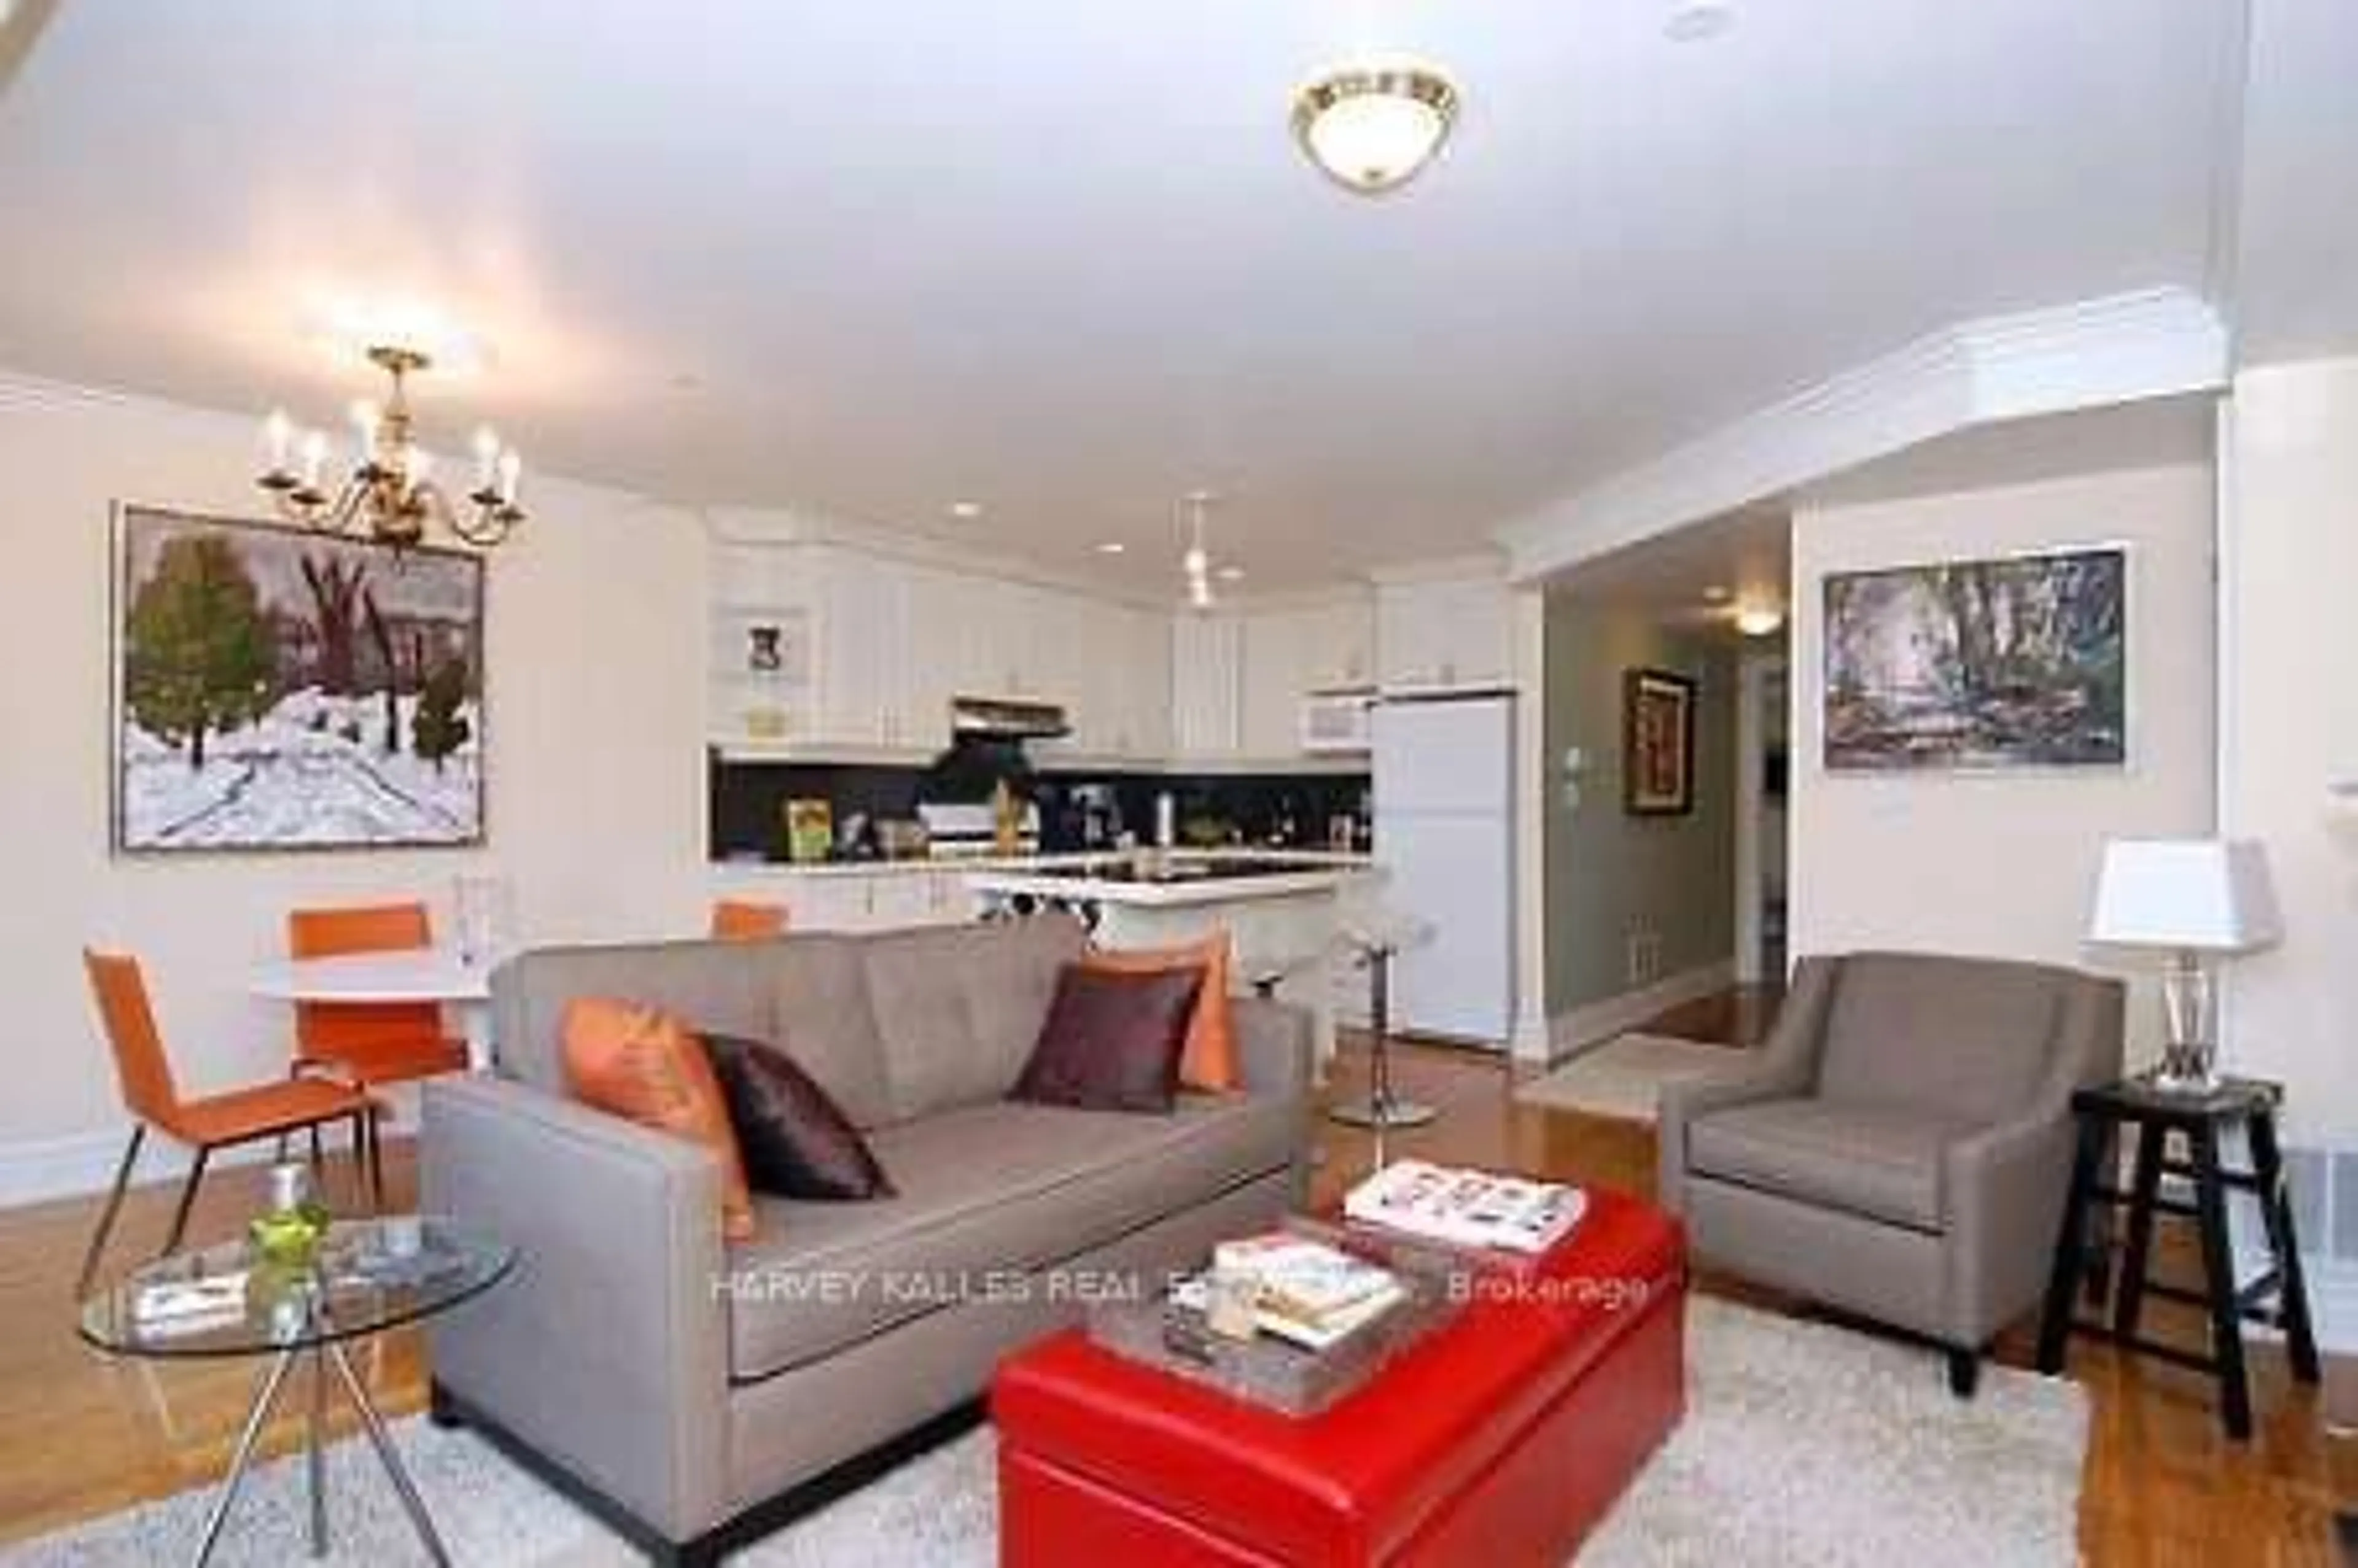 Living room for 148 Borden St, Toronto Ontario M5S 2N3